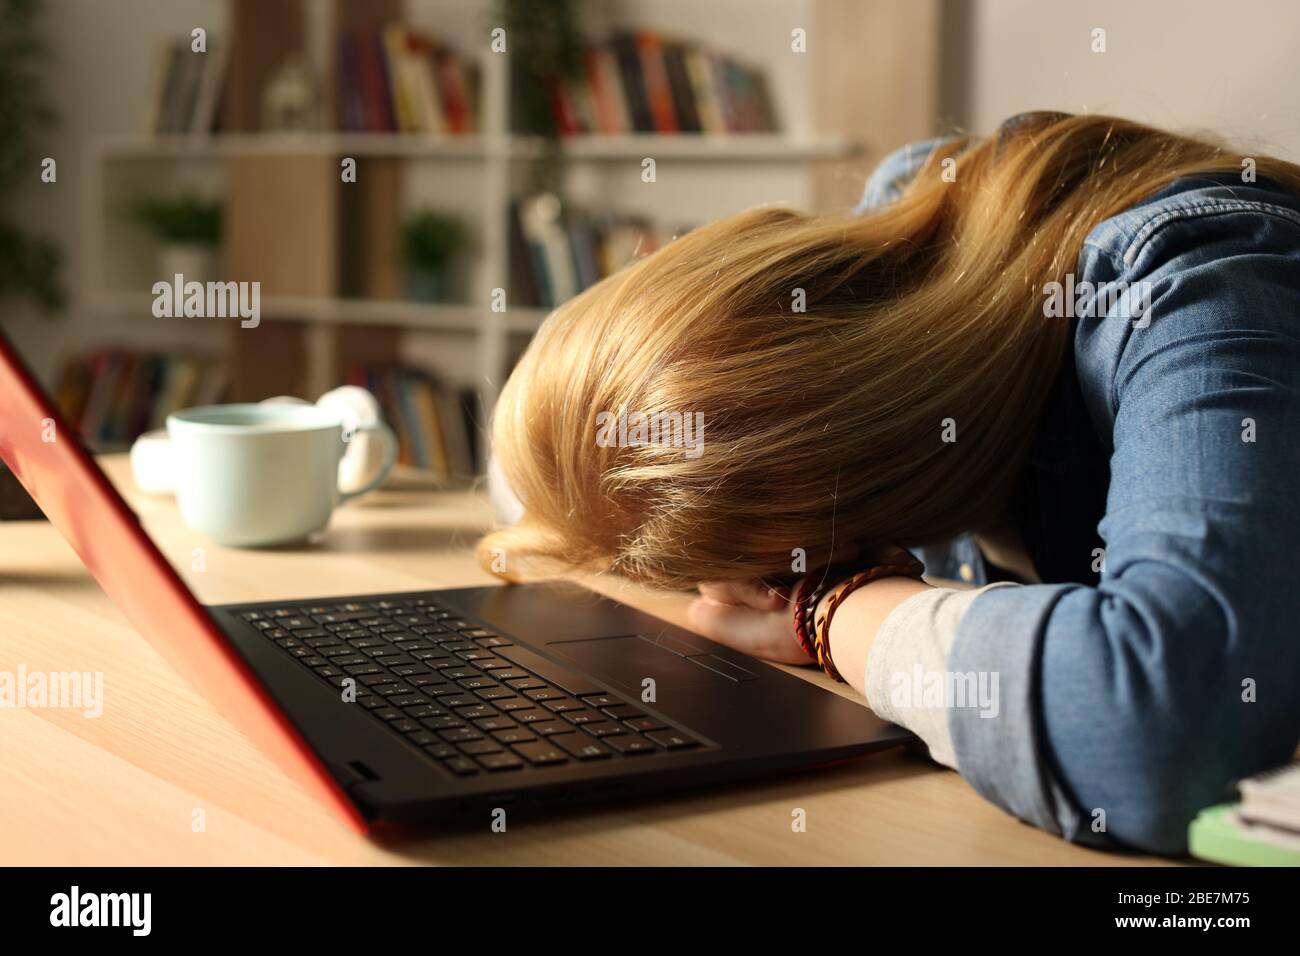 Gros plan sur une fille étudiante fatiguée surtravaillée avec un ordinateur portable qui dormait la nuit à la maison Banque D'Images